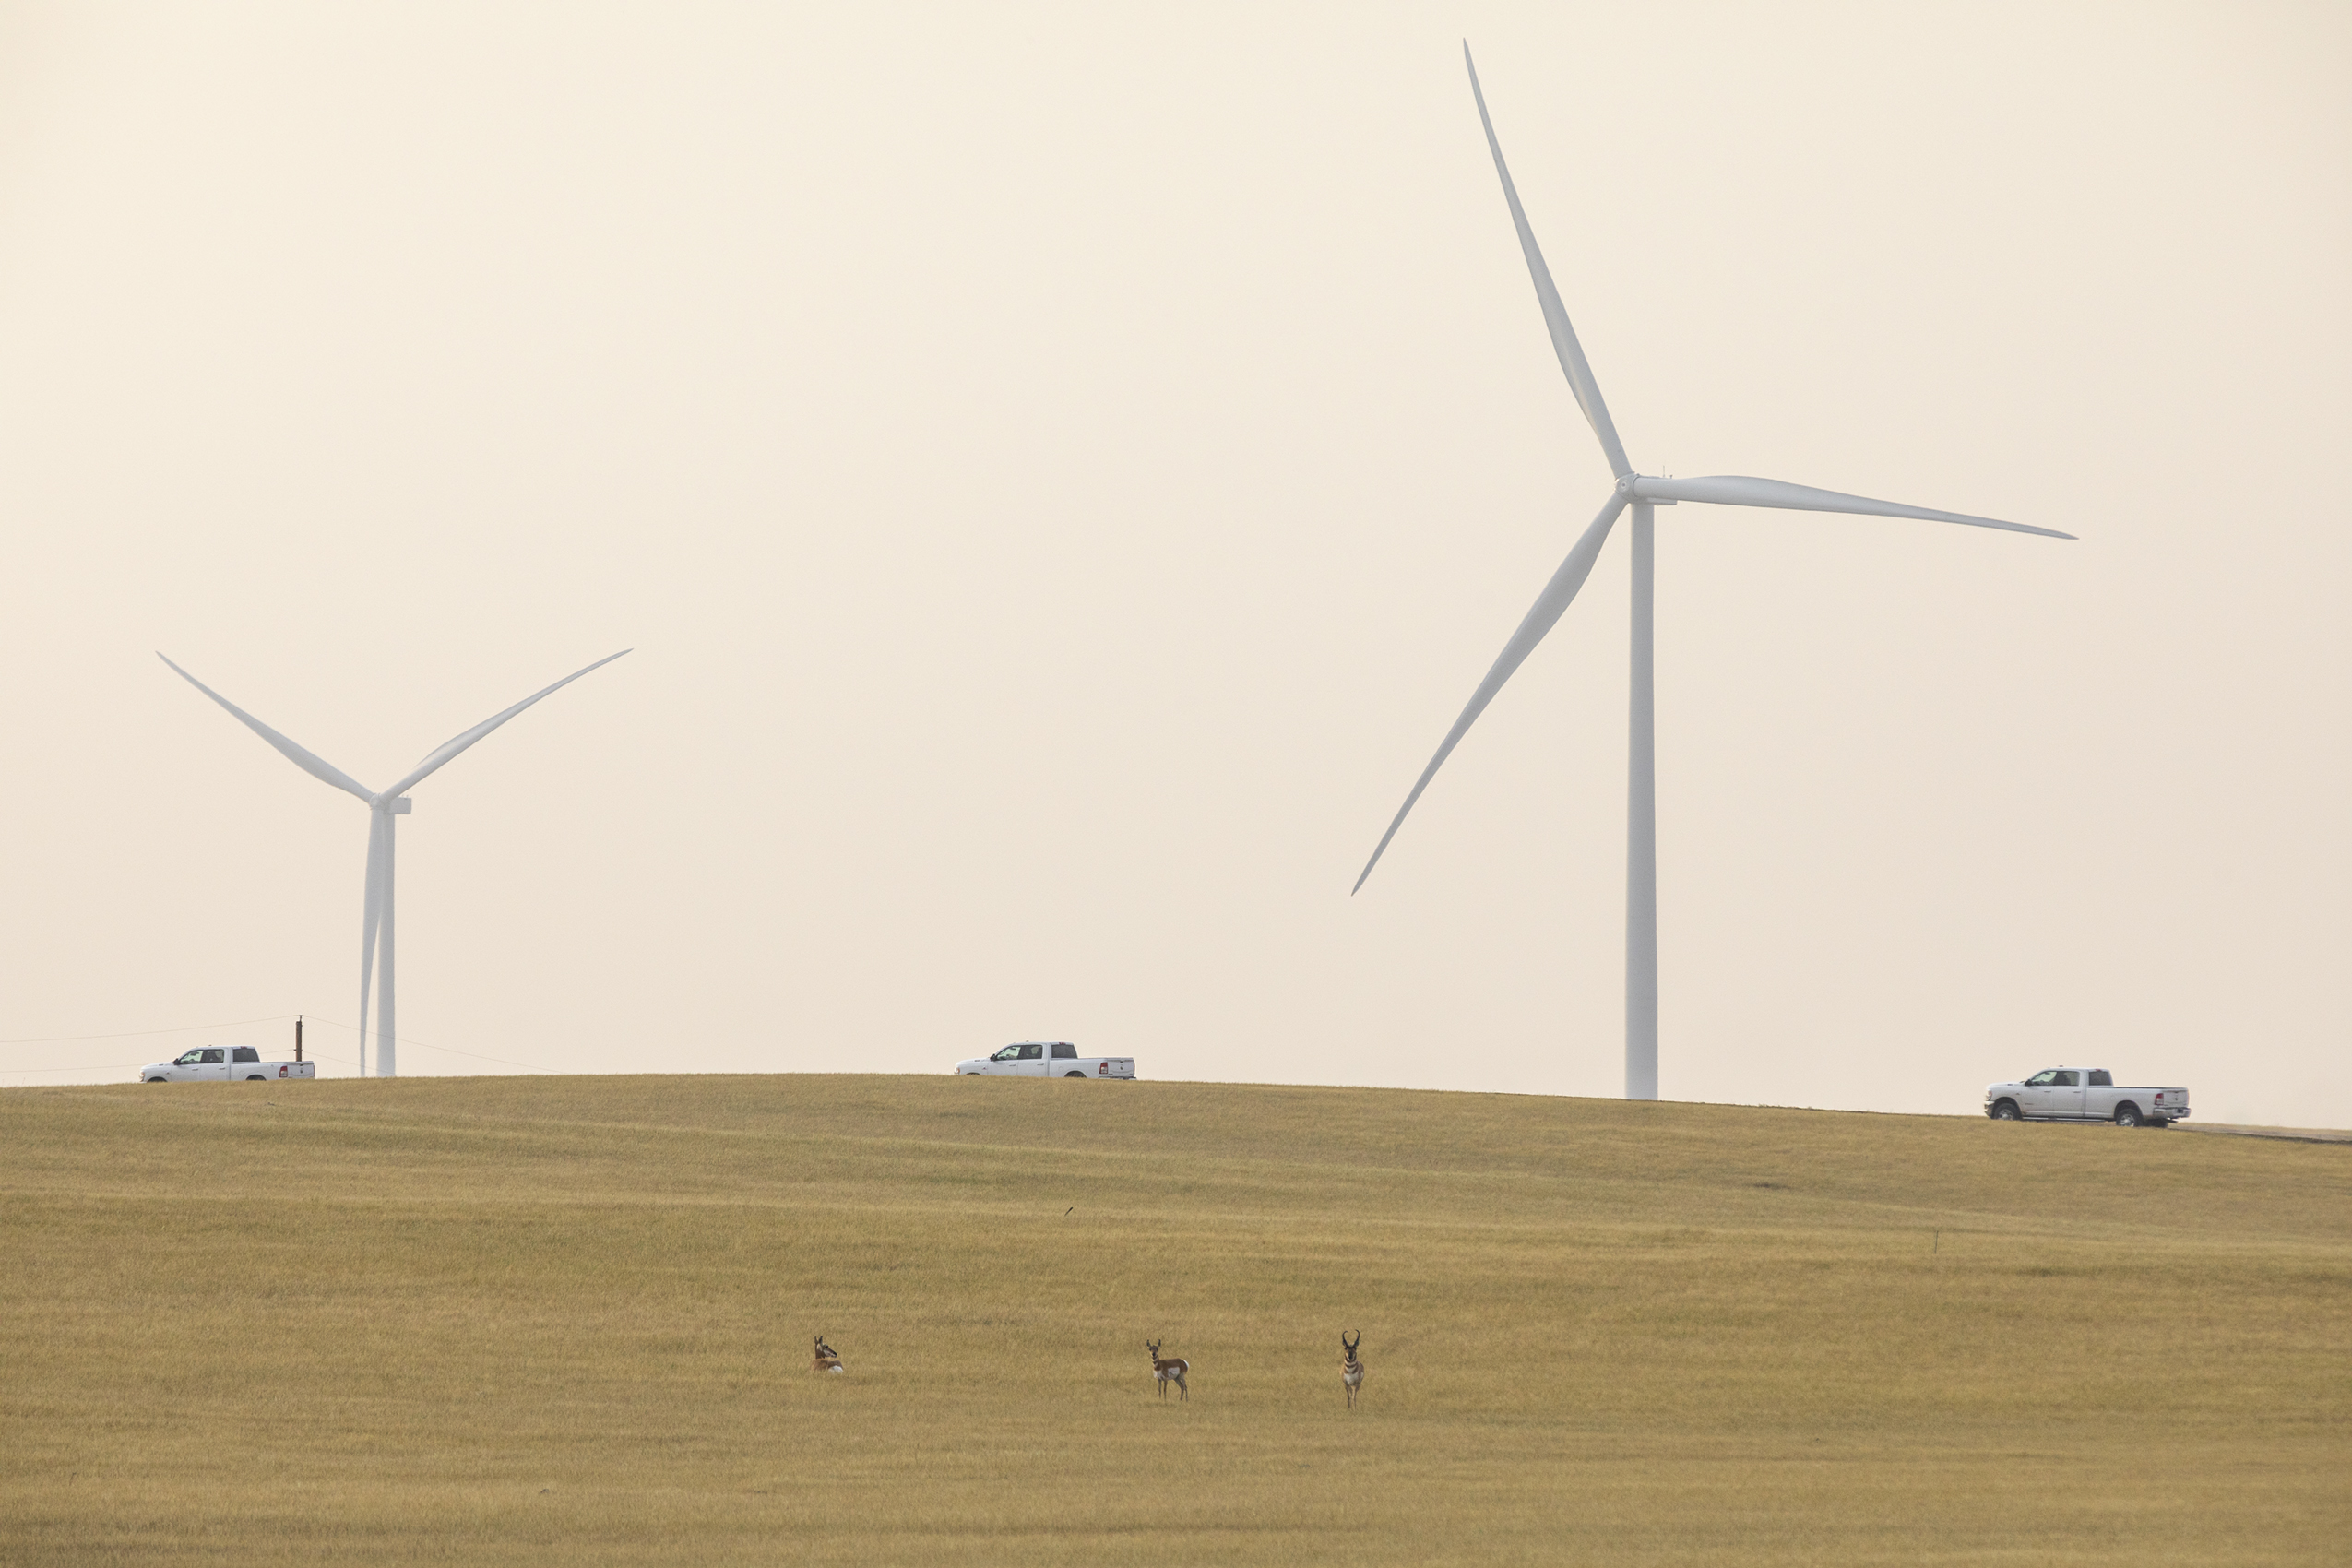 trucks and antelope on wind turbine farm